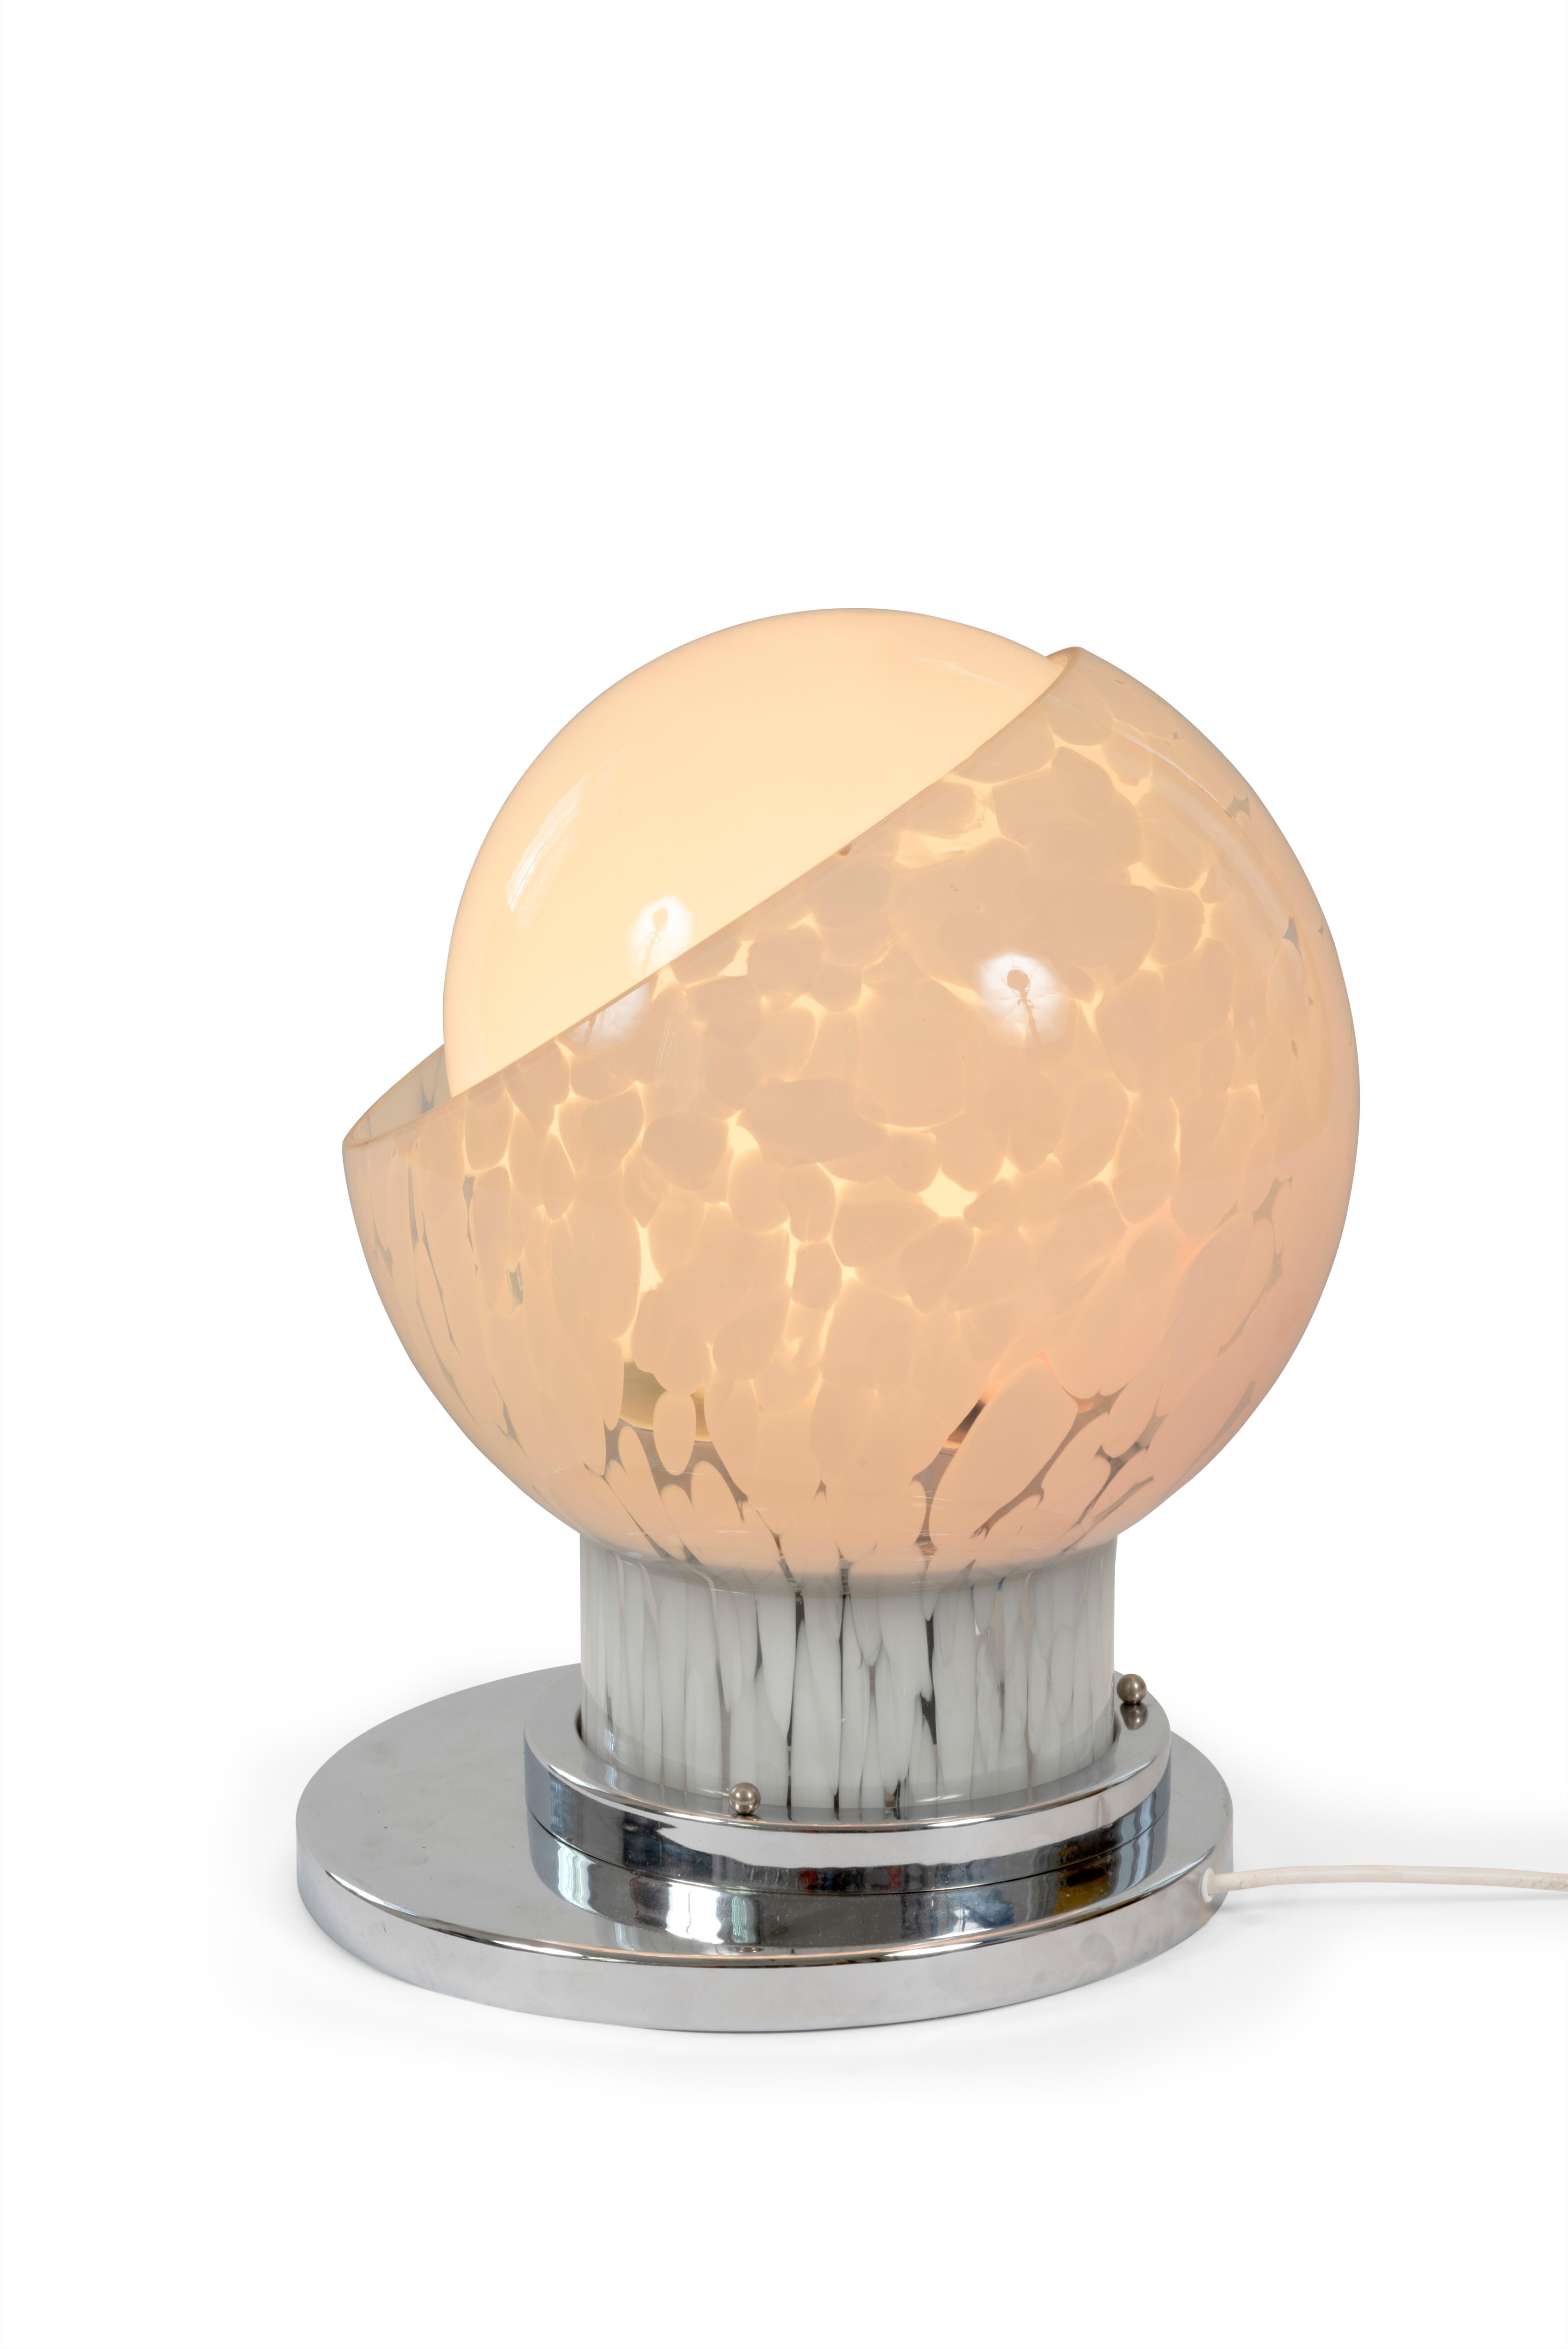 Lampe de table en verre opalin de Murano et métal chromé, dessinée par Carlo Nason pour Mazzega, Italie, années 60.

La lampe possède 2 ampoules permettant de jouer avec des luminosités différentes .

Dimensions : H55xL38xP38cm